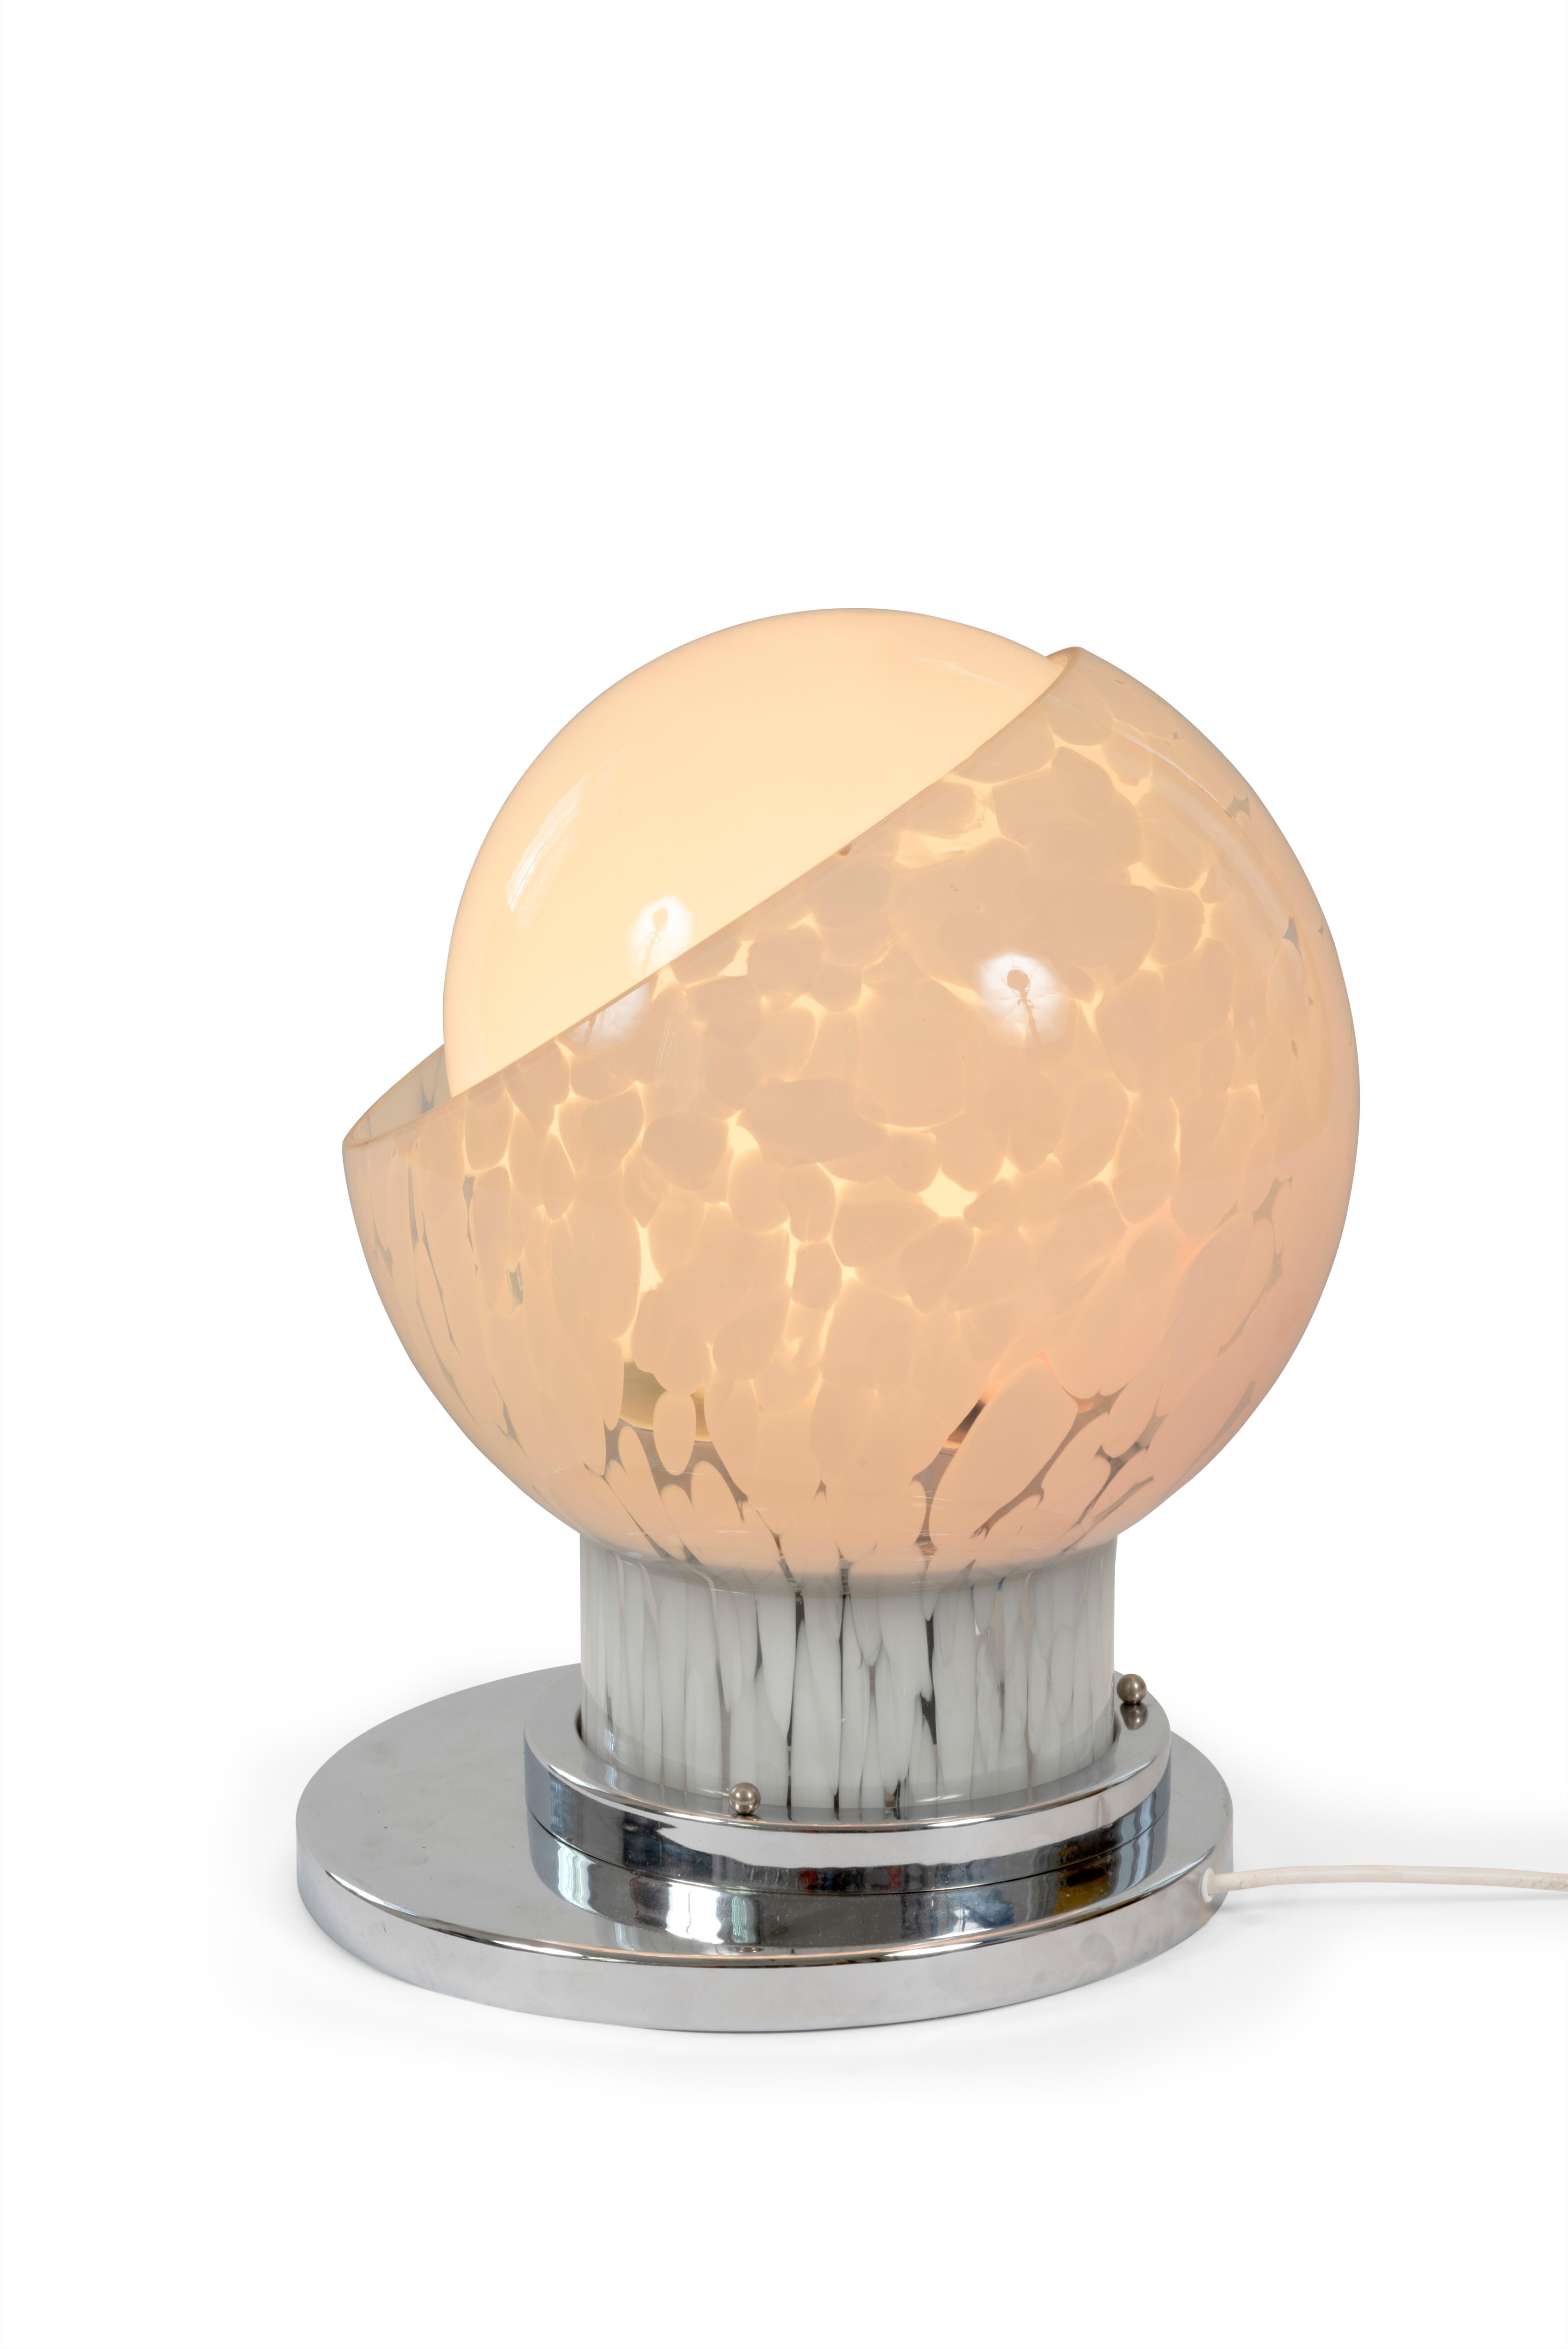 Lampe de table en verre opalin de Murano et métal chromé, dessinée par Carlo Nason pour Mazzega, Italie, années 60.

La lampe possède 2 ampoules permettant de jouer avec des luminosités différentes .

Dimensions : H55xL38xP38cm